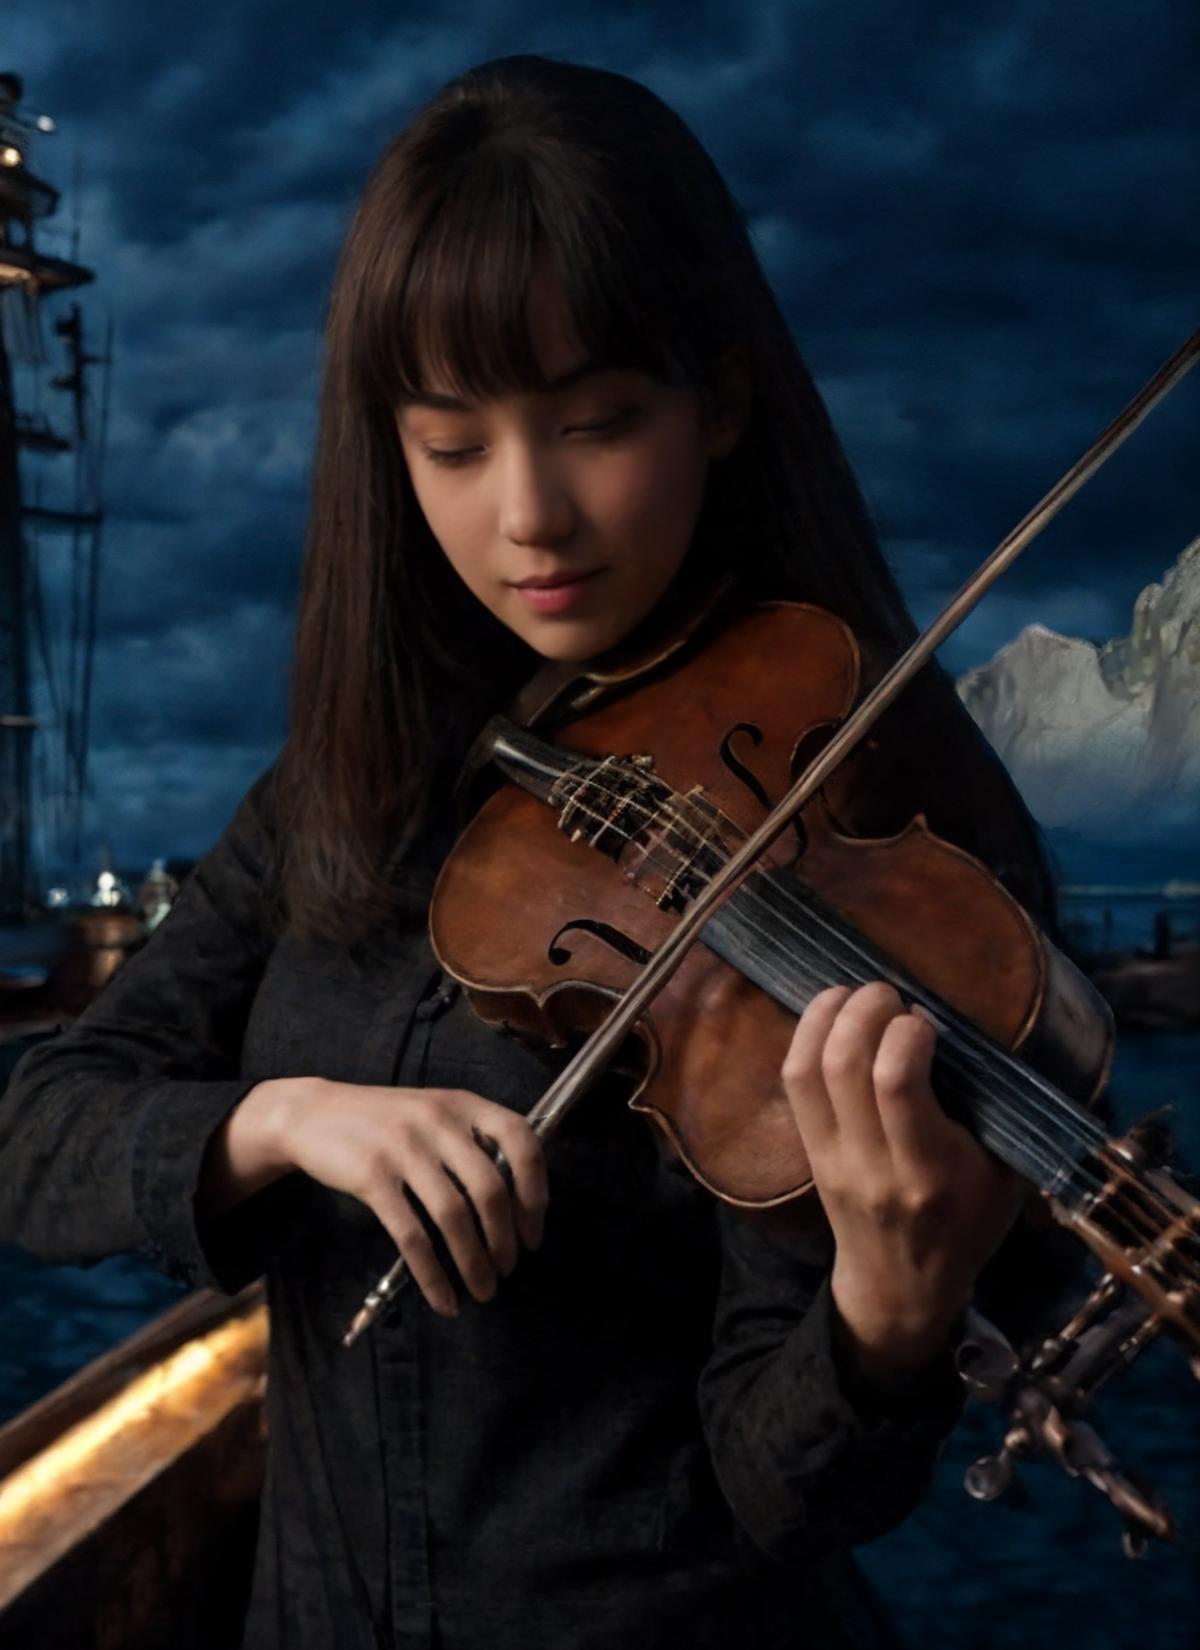 小提琴 | violin image by WaffleAbyss